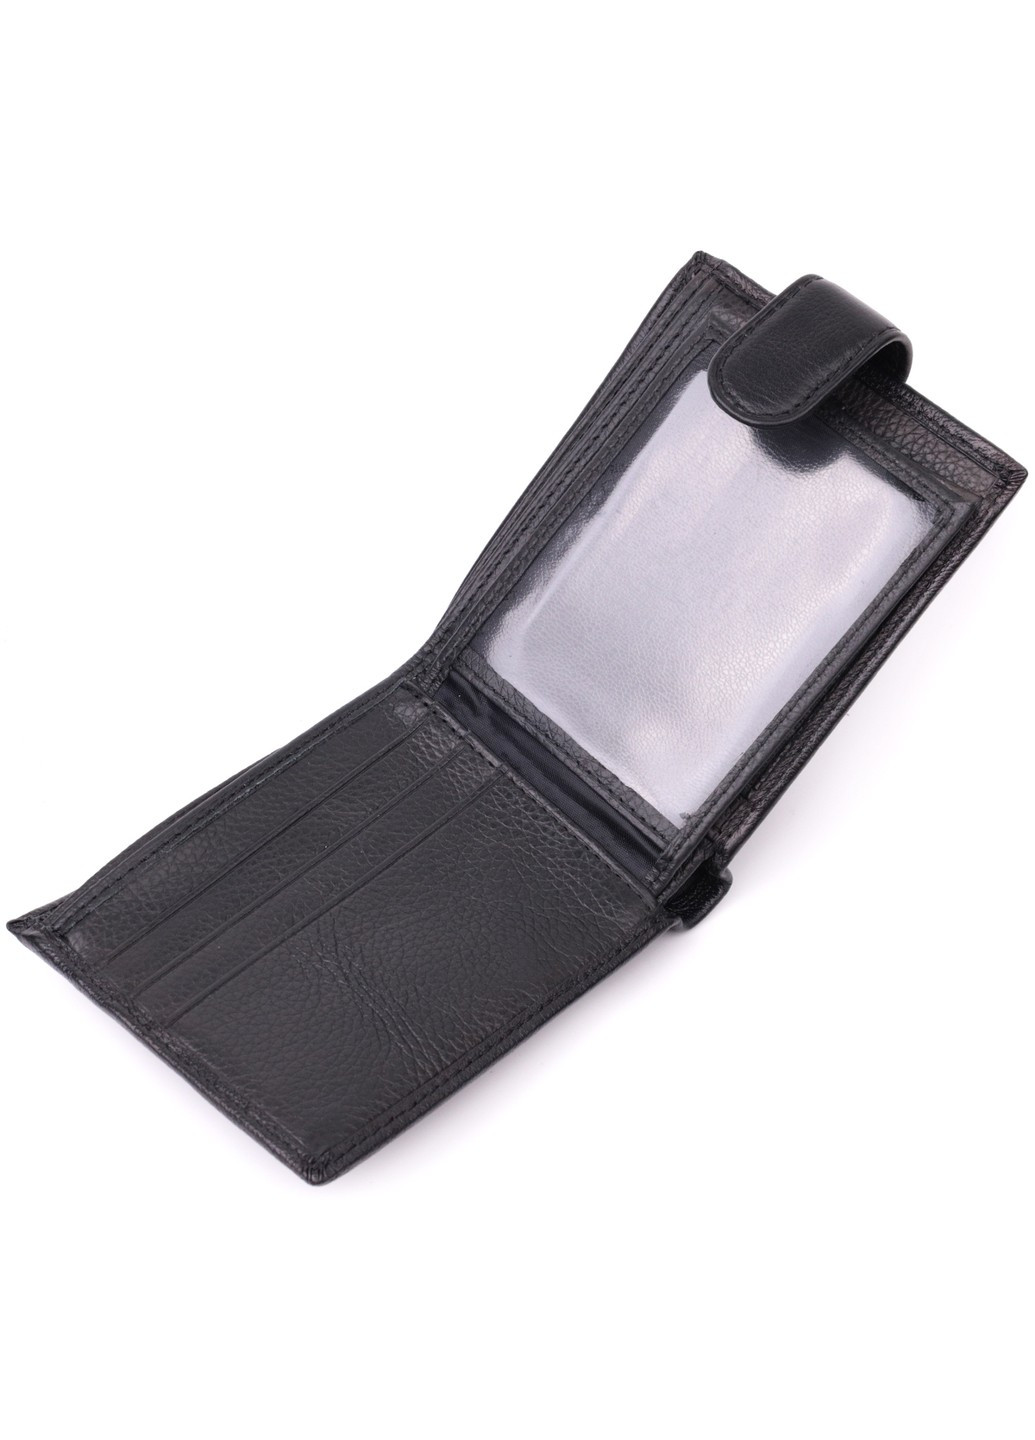 Горизонтальный бумажник среднего размера из натуральной кожи 22454 Черный st leather (278001033)